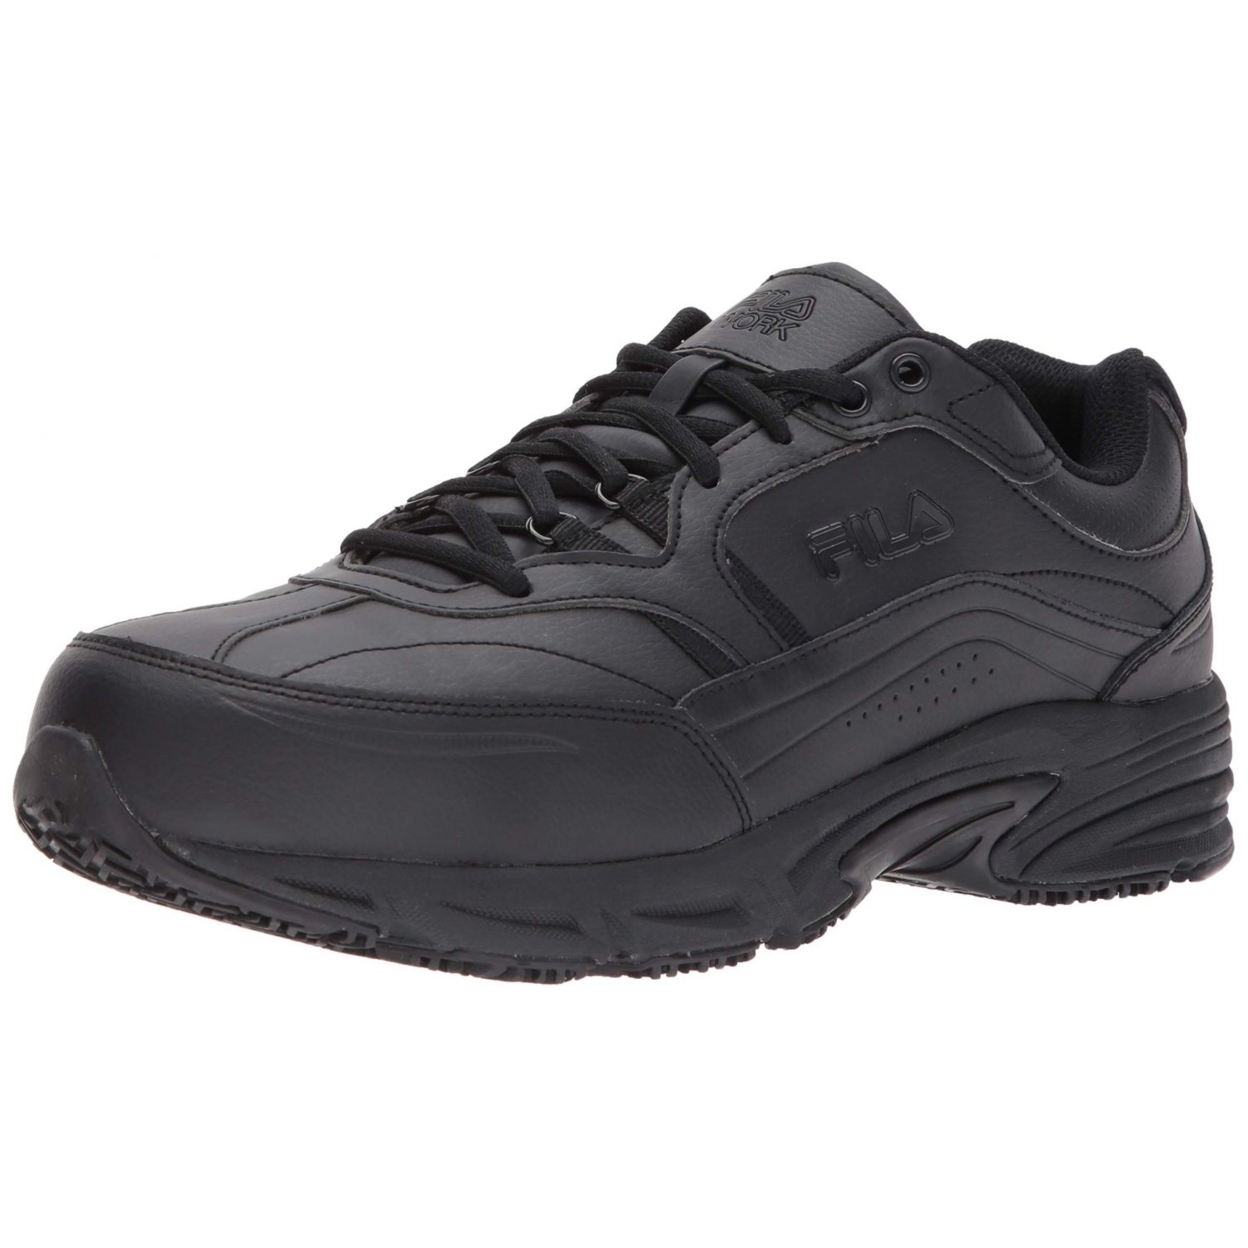 Fila Men's Memory Workshift Slip Resistant Steel Toe Work Shoes Hiking BLK/BLK/BLK - Black, 14